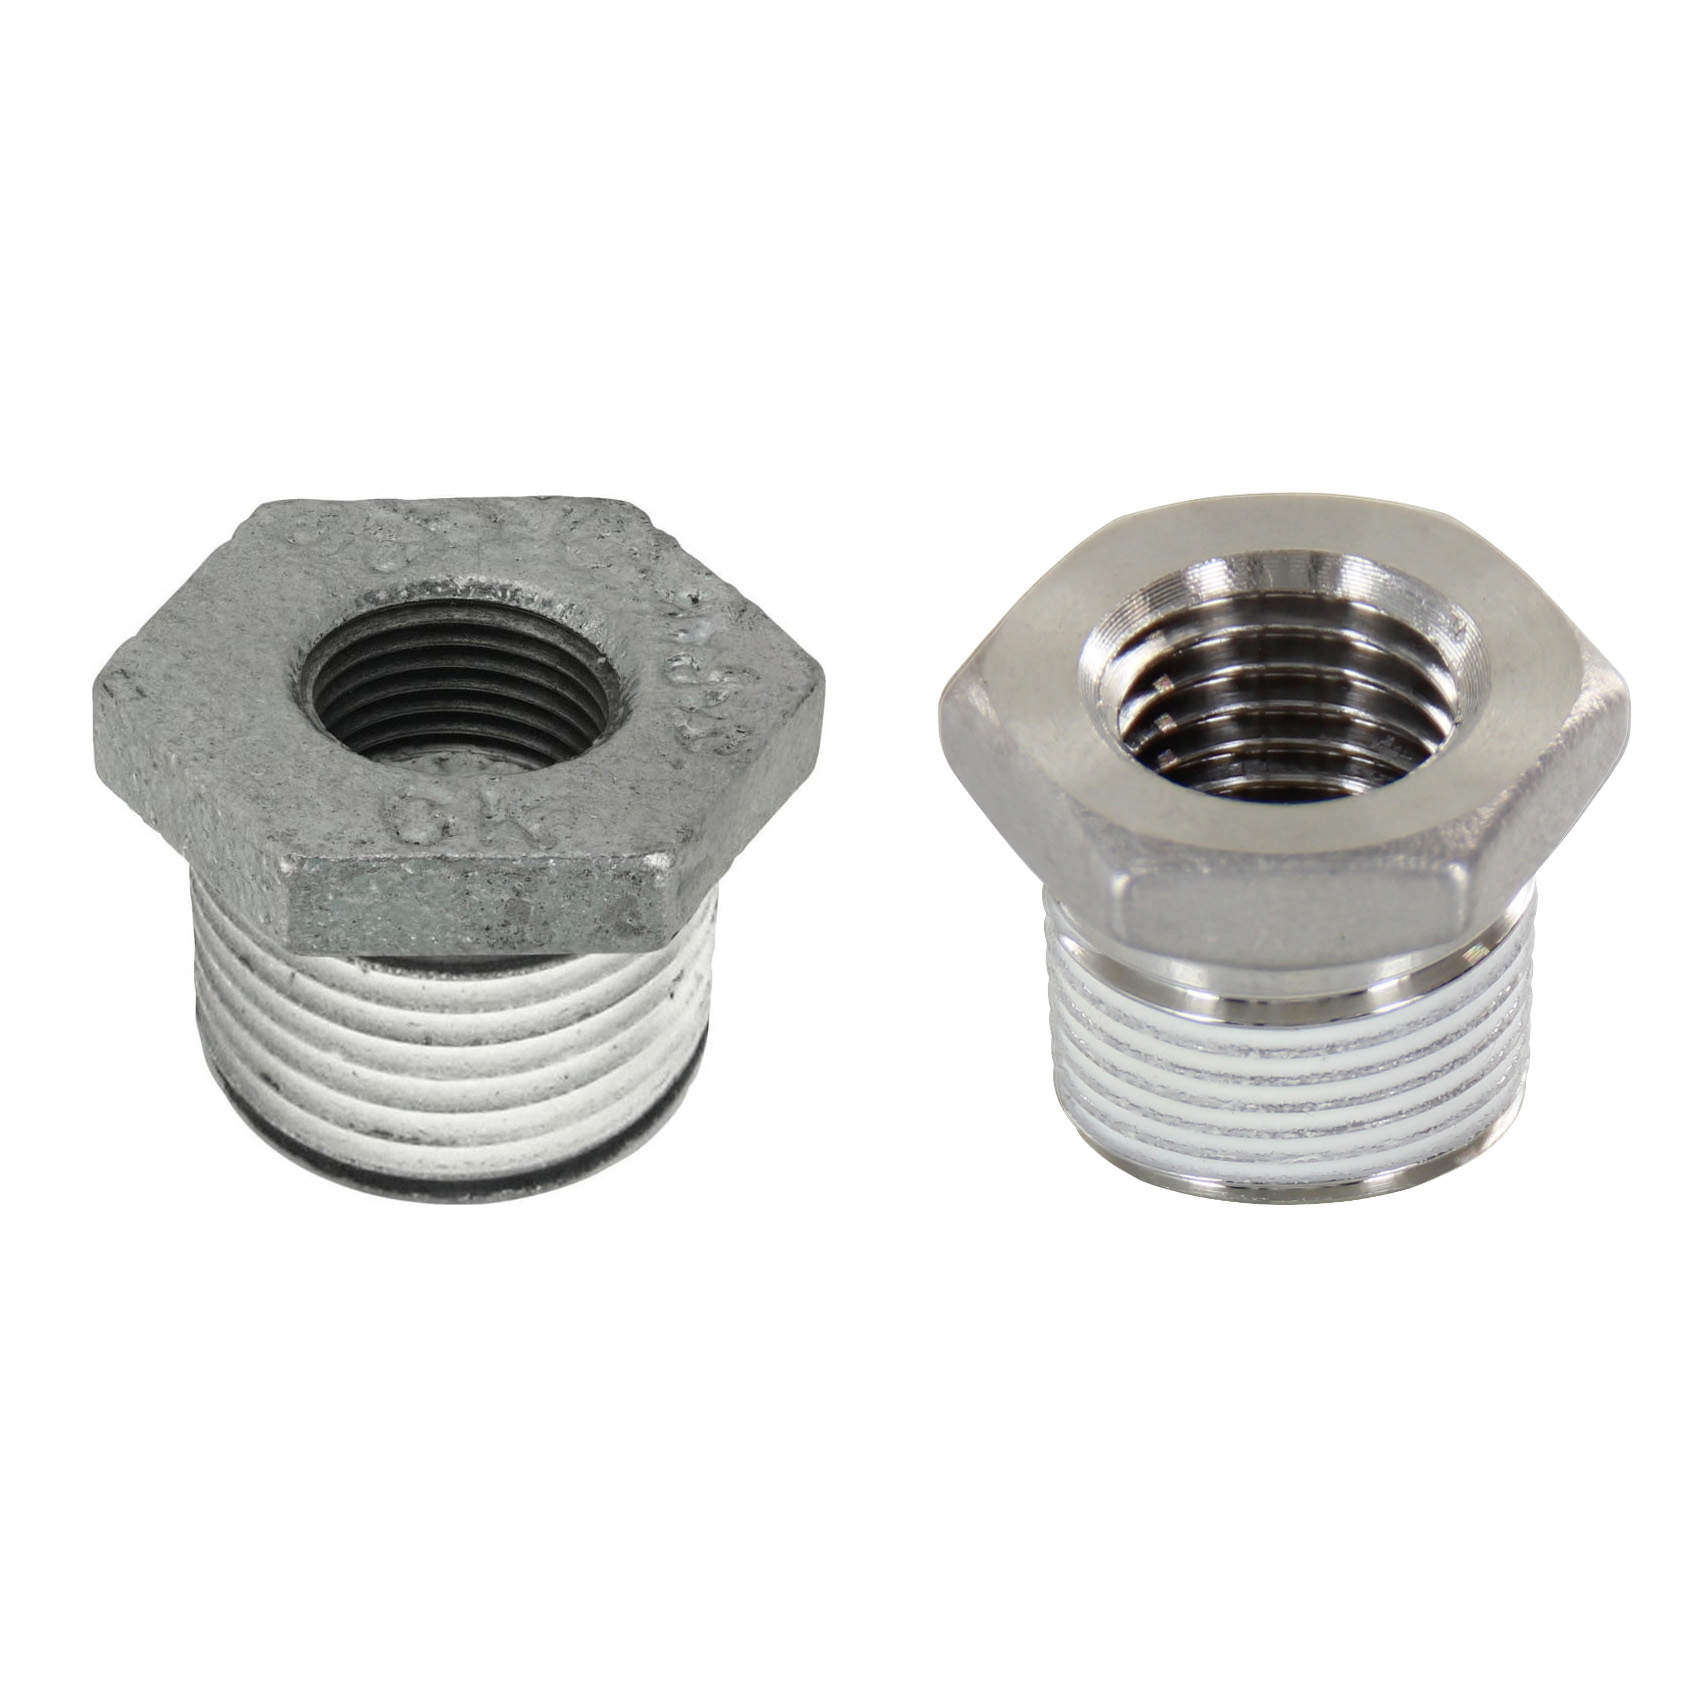 Low Pressure Screw Fittings - Thread Coated Type - Steel Pipe Fittings - Bushings SGCPB13